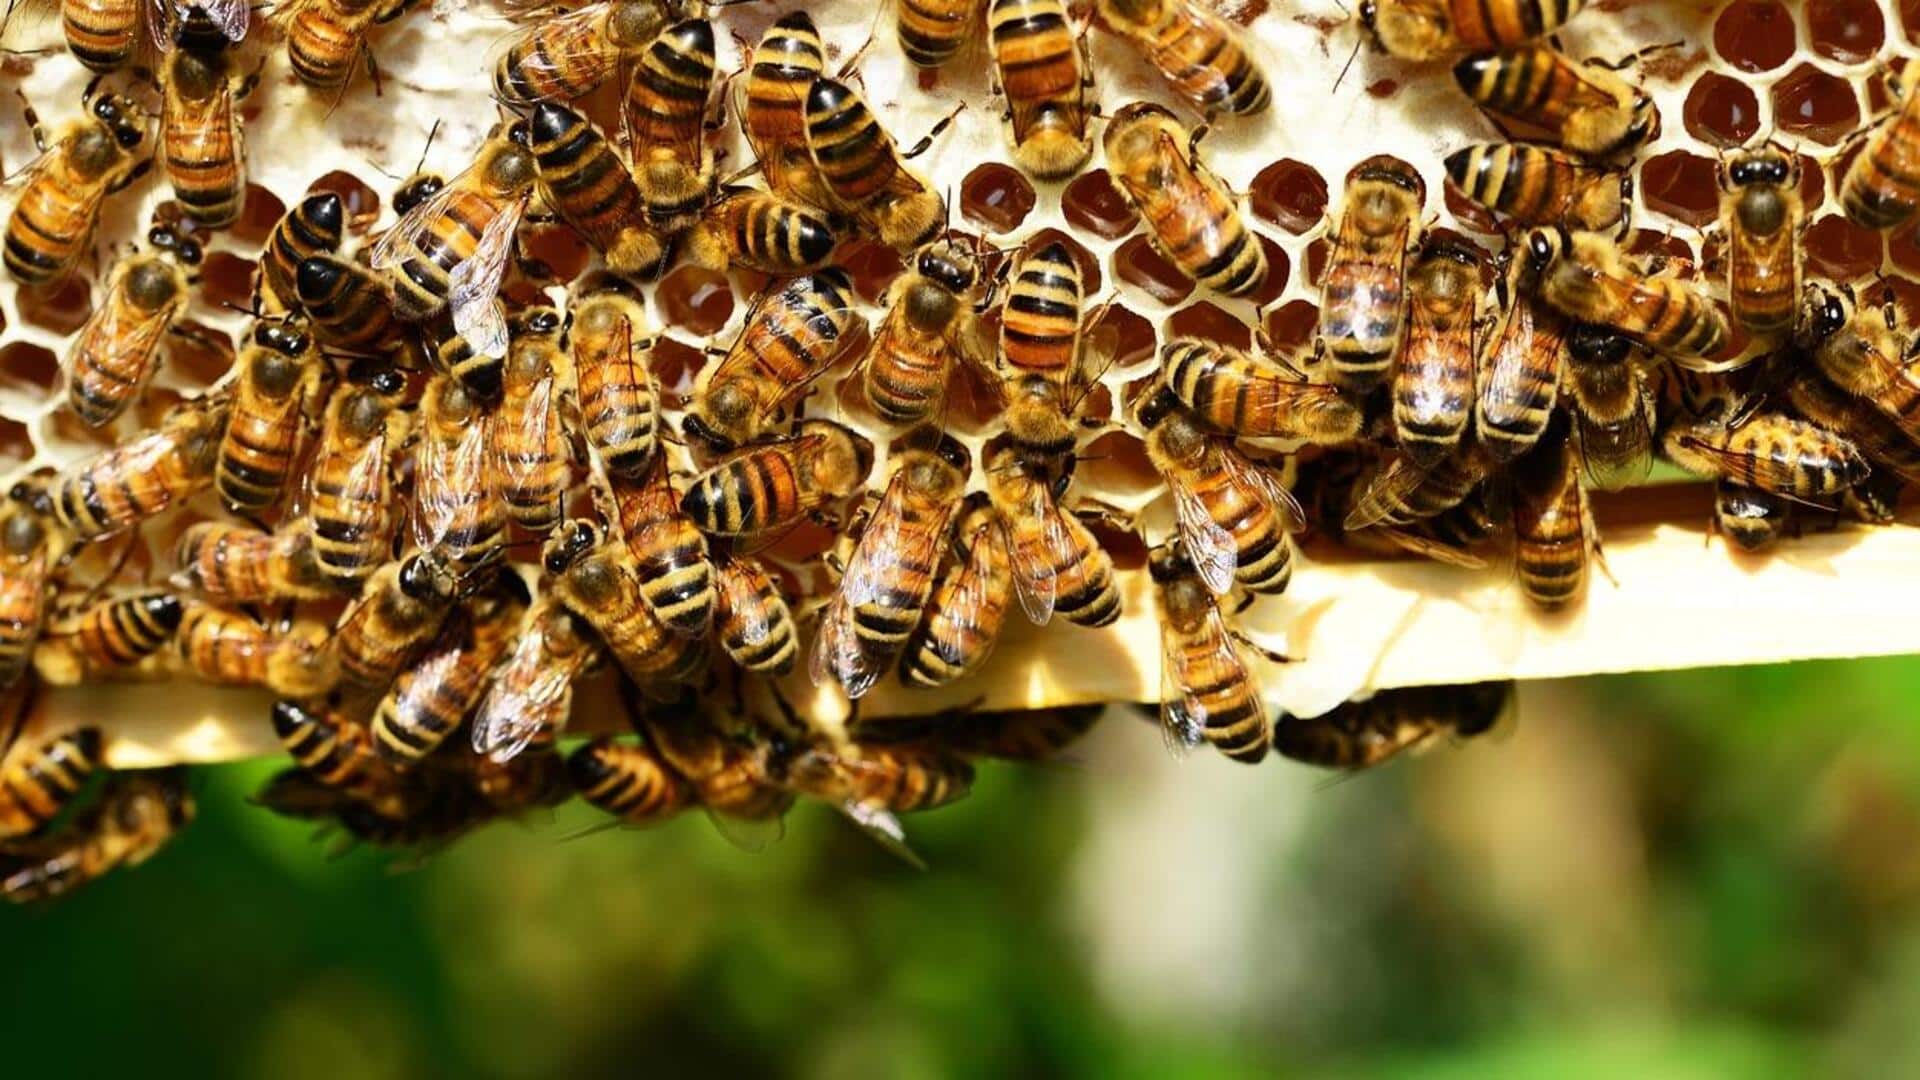 उत्तर प्रदेश: अंतिम संस्कार कर रहे लोगों पर मधुमक्खियों का हमला, 25 बुरी तरह से घायल